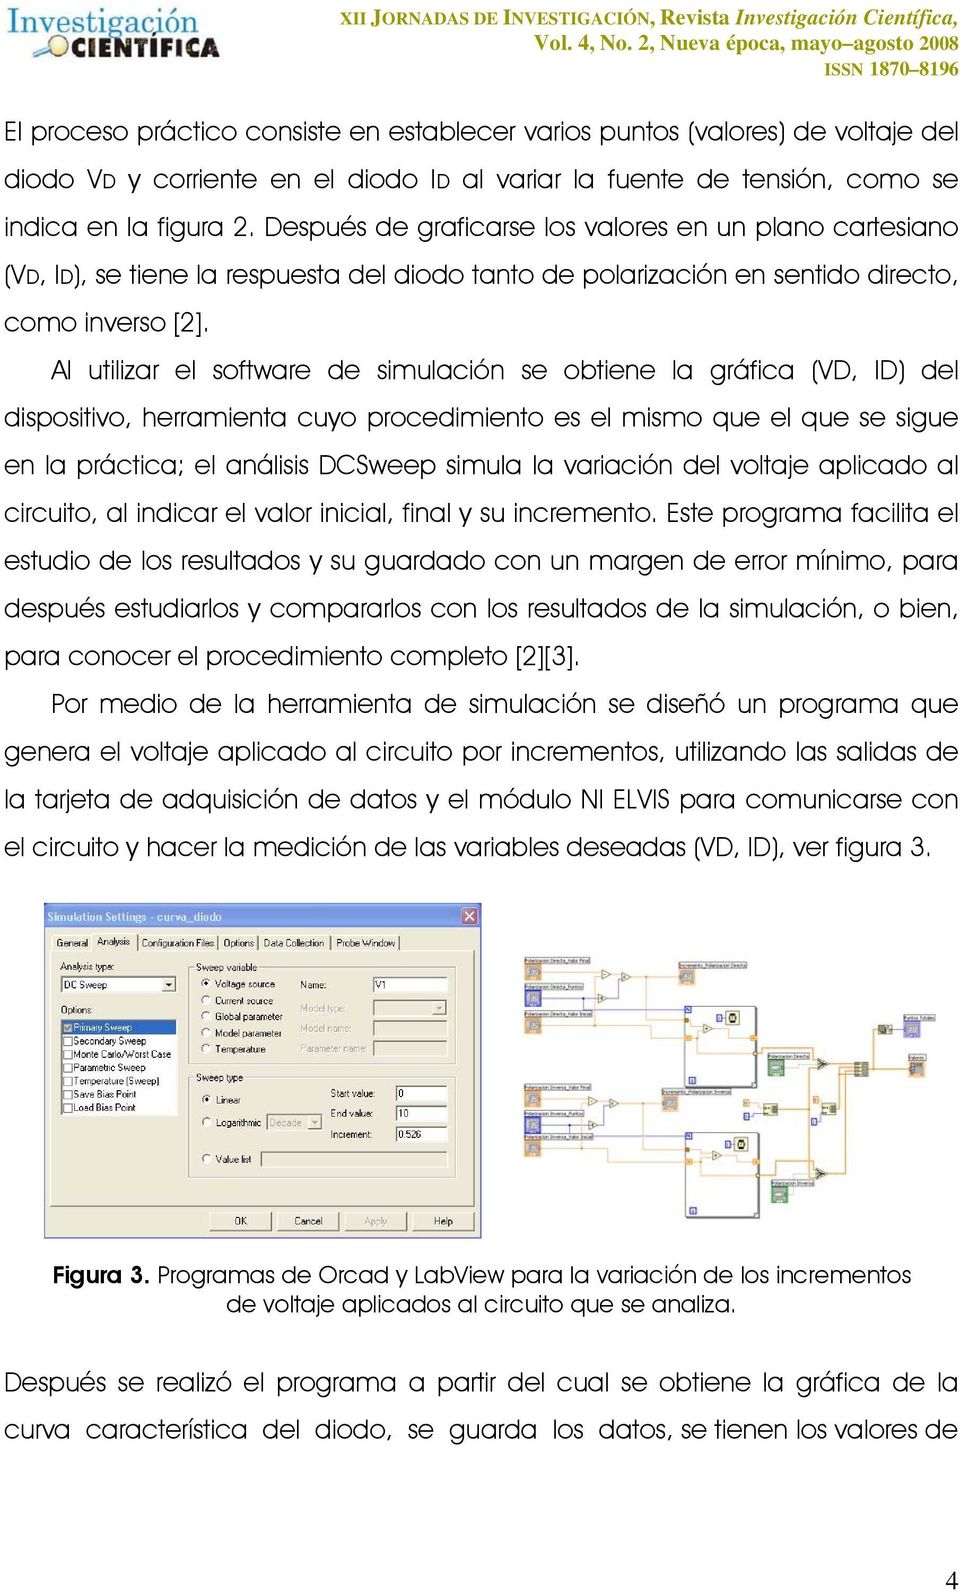 Al utilizar el software de simulación se obtiene la gráfica (VD, ID) del dispositivo, herramienta cuyo procedimiento es el mismo que el que se sigue en la práctica; el análisis DCSweep simula la